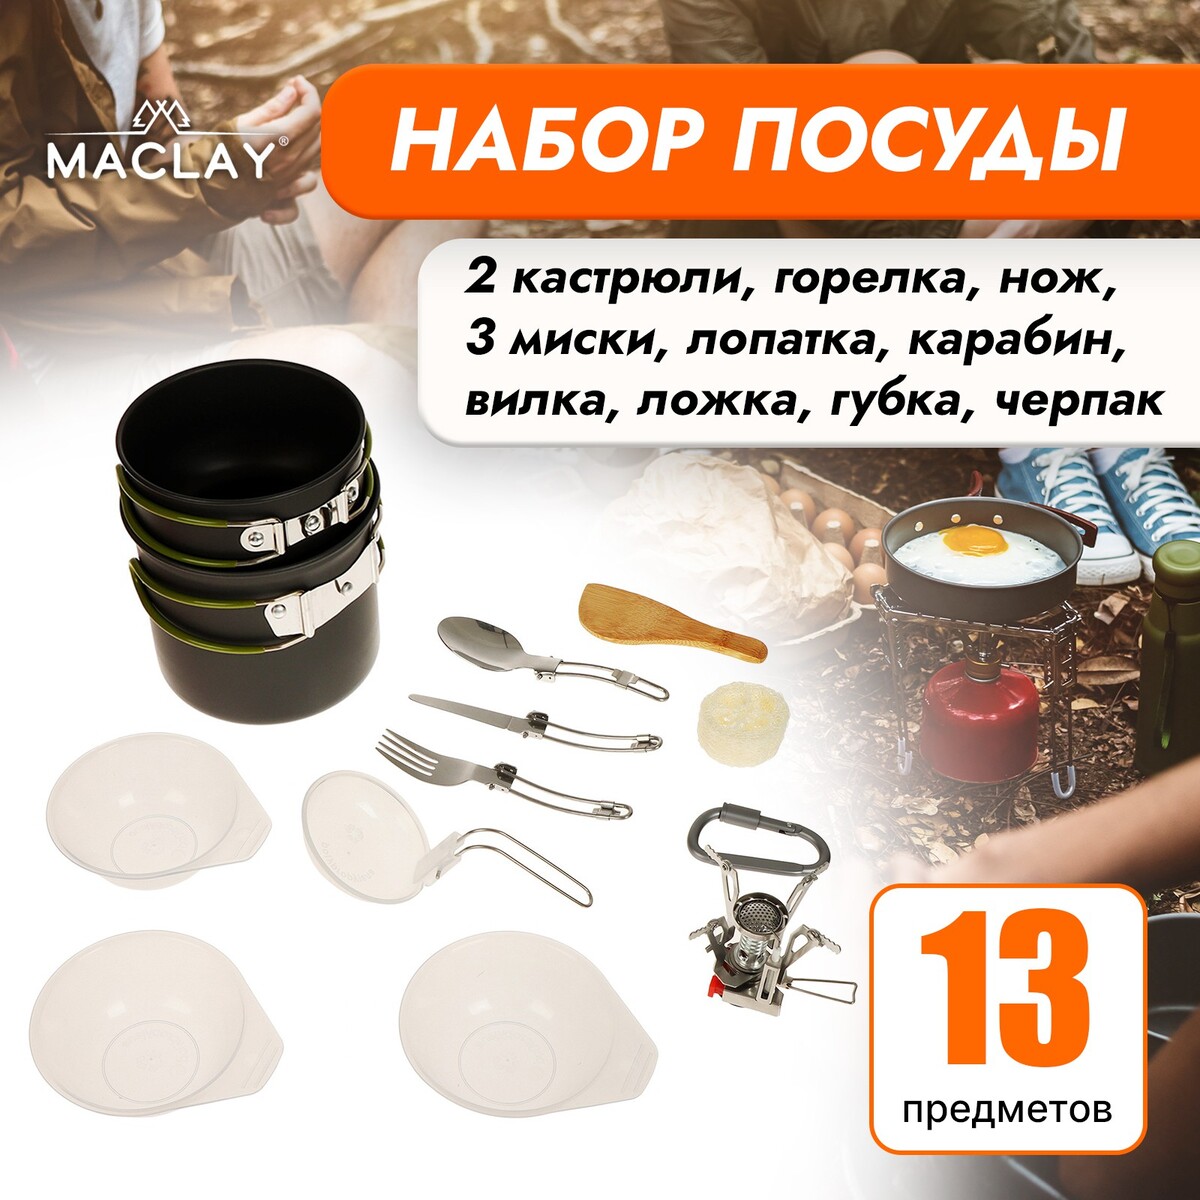 Набор туристической посуды maclay: 2 кастрюли, приборы, горелка, 3 миски, лопатка, карабин merimeri приборы